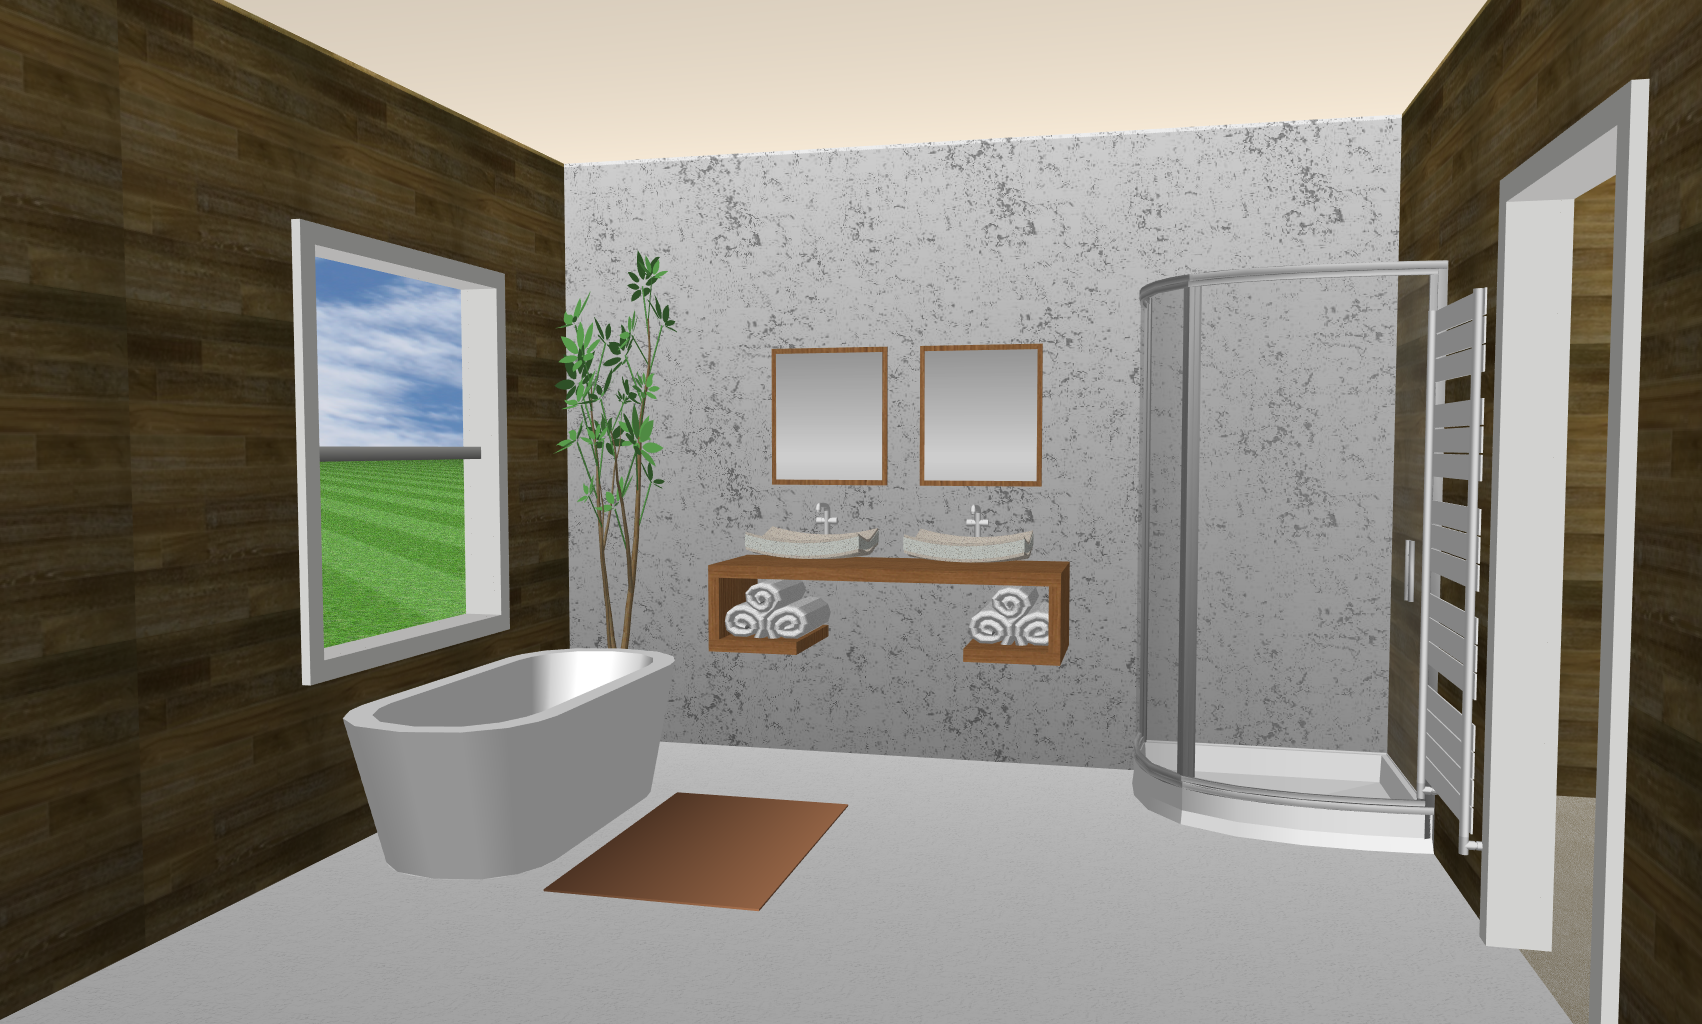 Salle de bain, cuisine : conception et fabrication